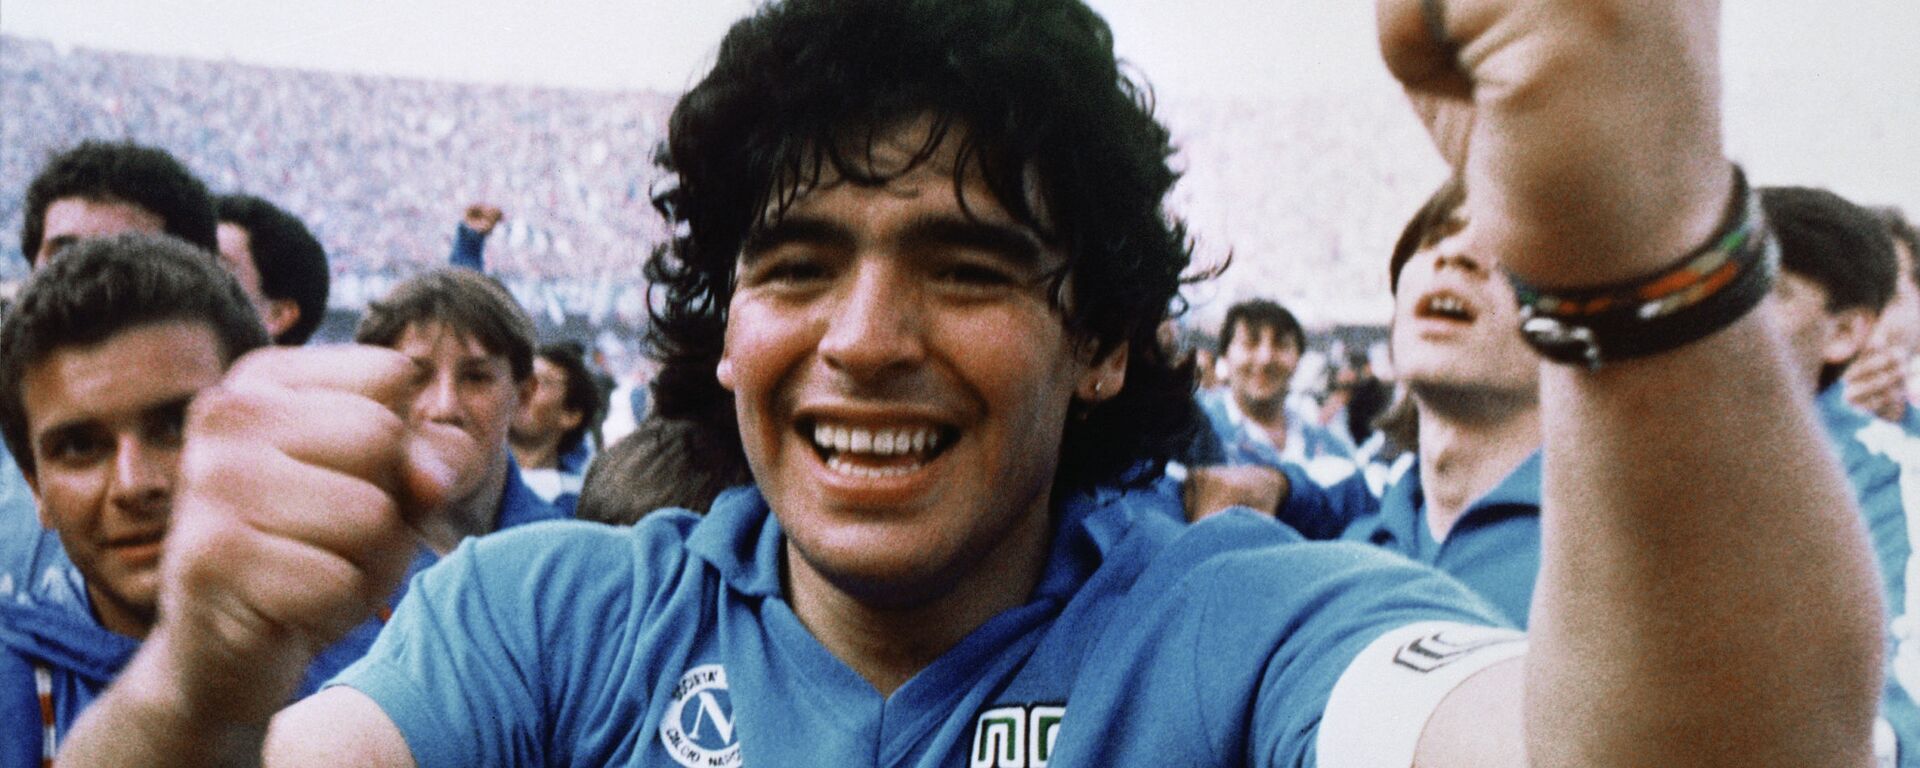 Диего Марадона после победы клуба Наполи в чемпионате Италии, 1987 - Sputnik Mundo, 1920, 14.09.2021